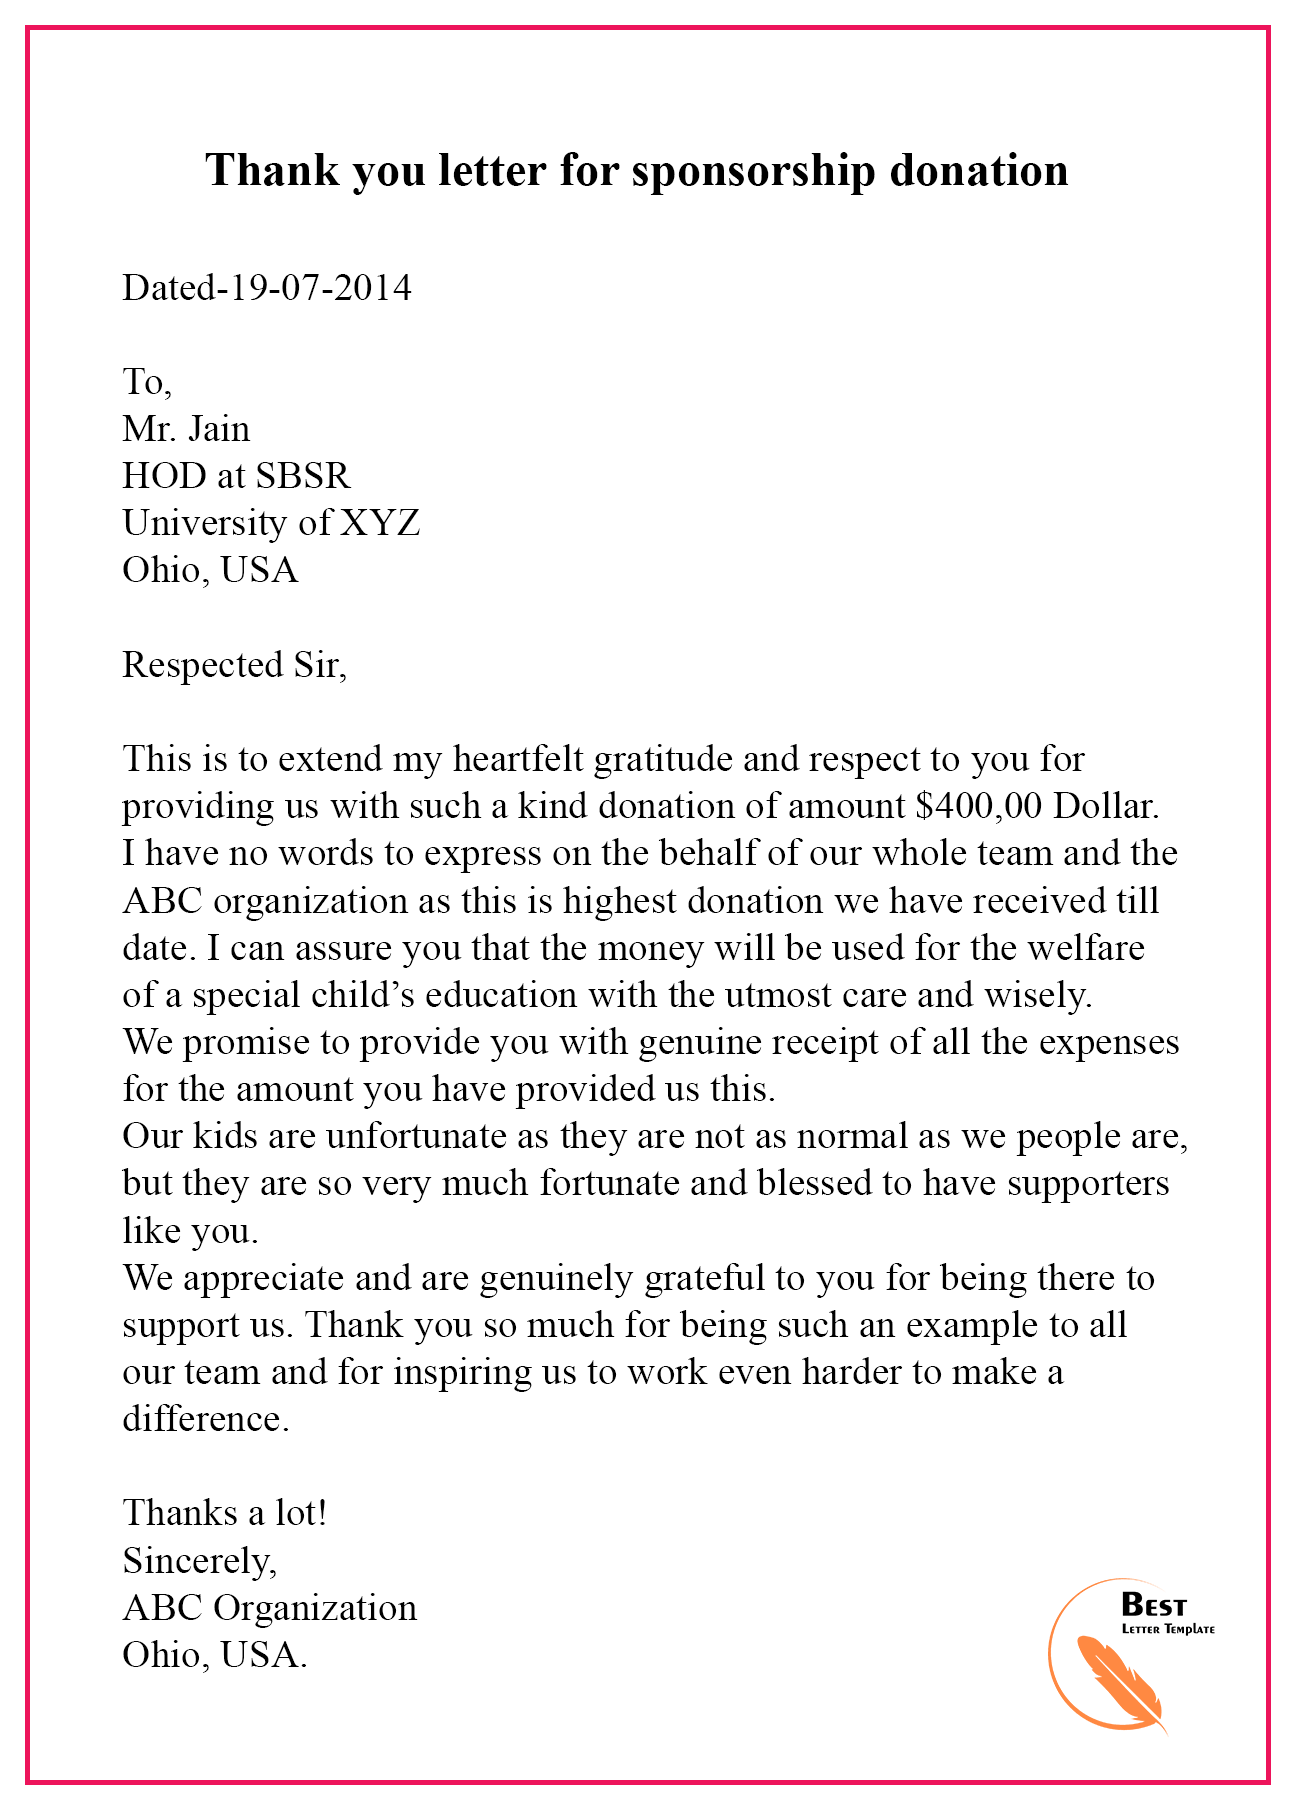 Thank You Sponsorship Letter from bestlettertemplate.com